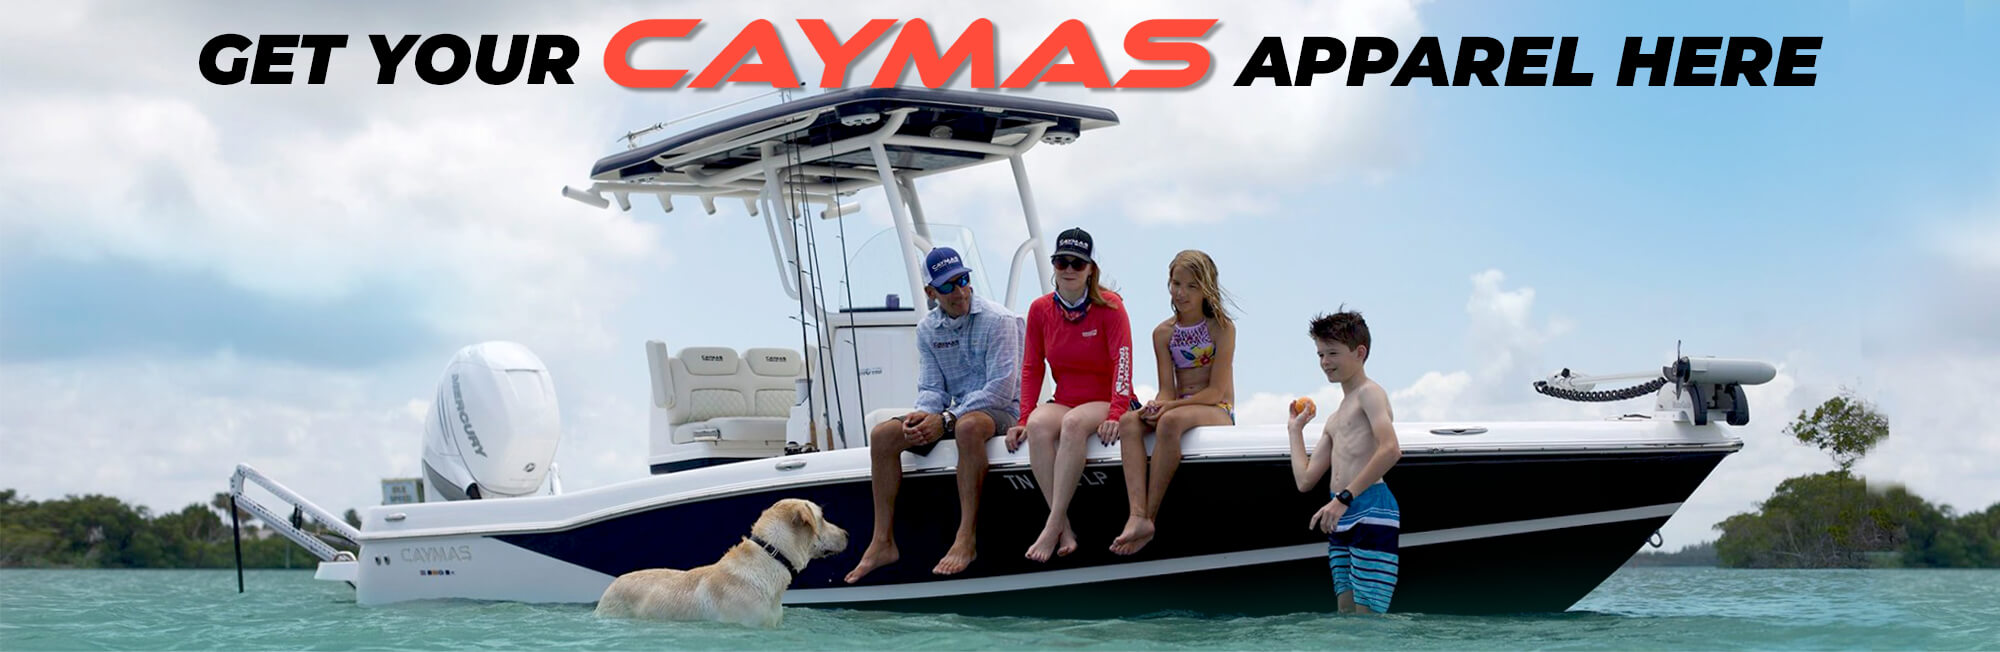 Caymas Boats Apparel